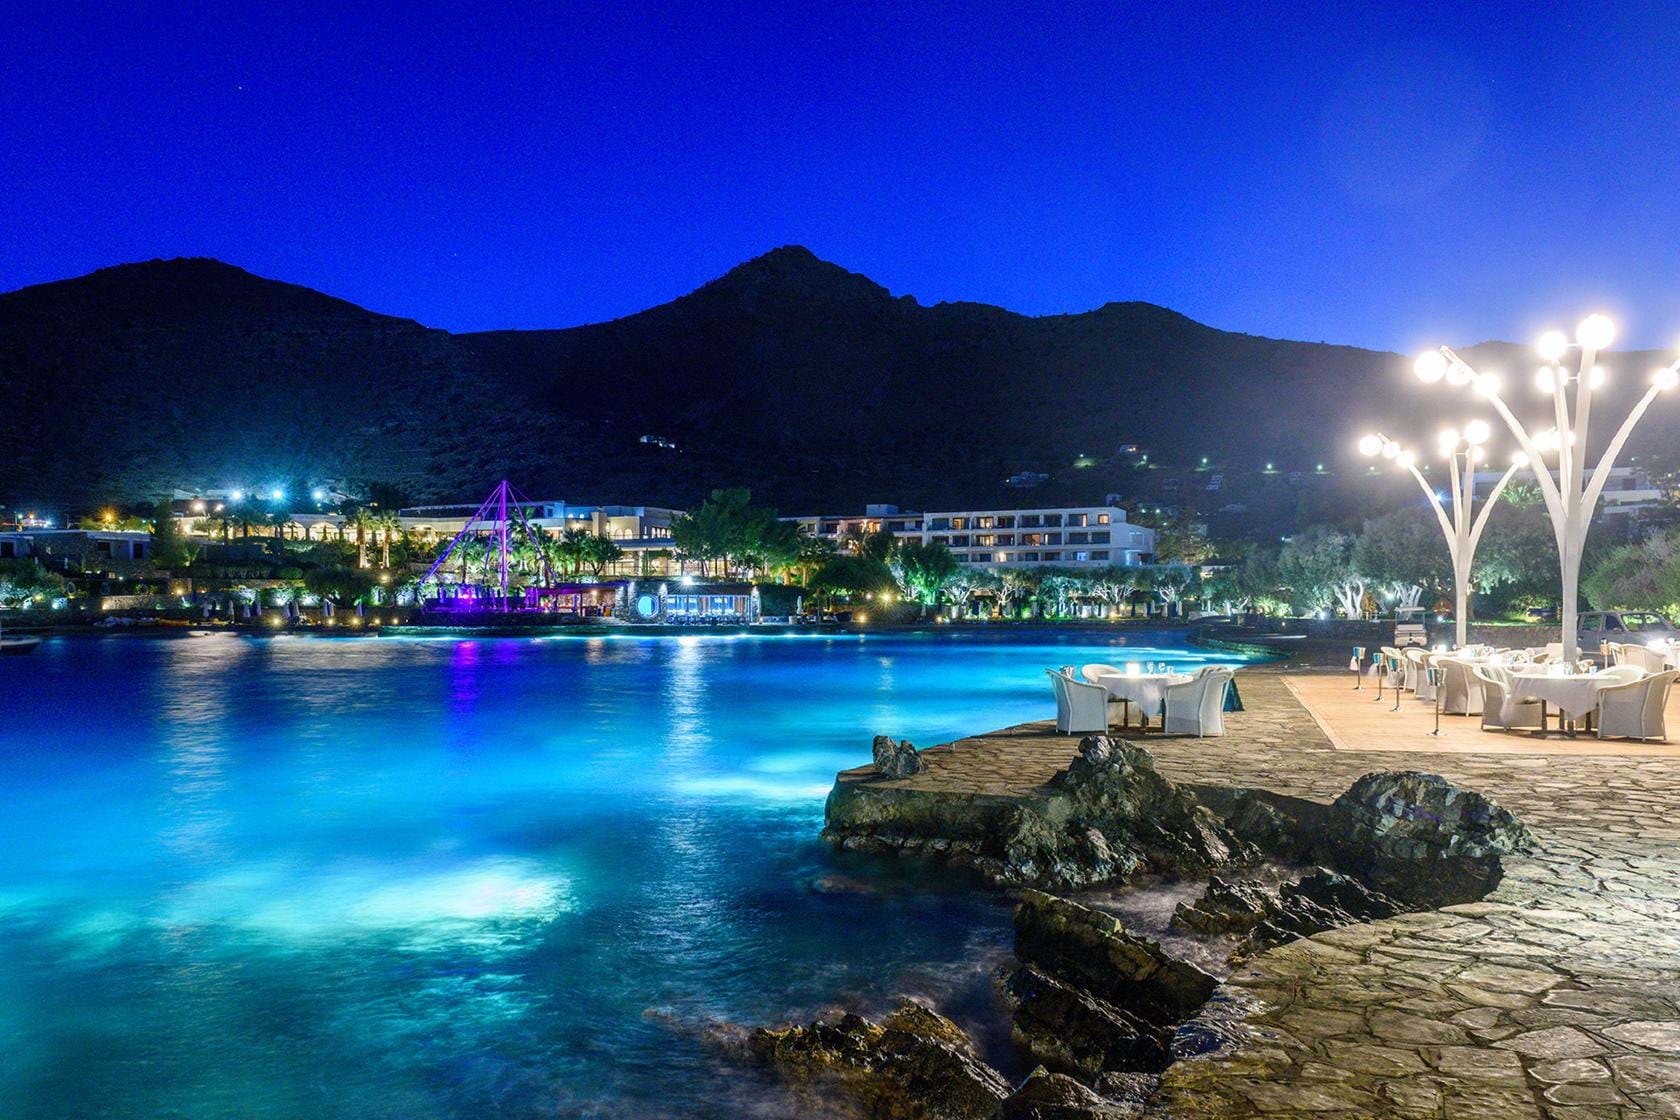 Vue panoramique du soir de l'Hôtel Elounda Bay 5étoiles situé à Elounda proche d'Aghios Nicolaos en Crète